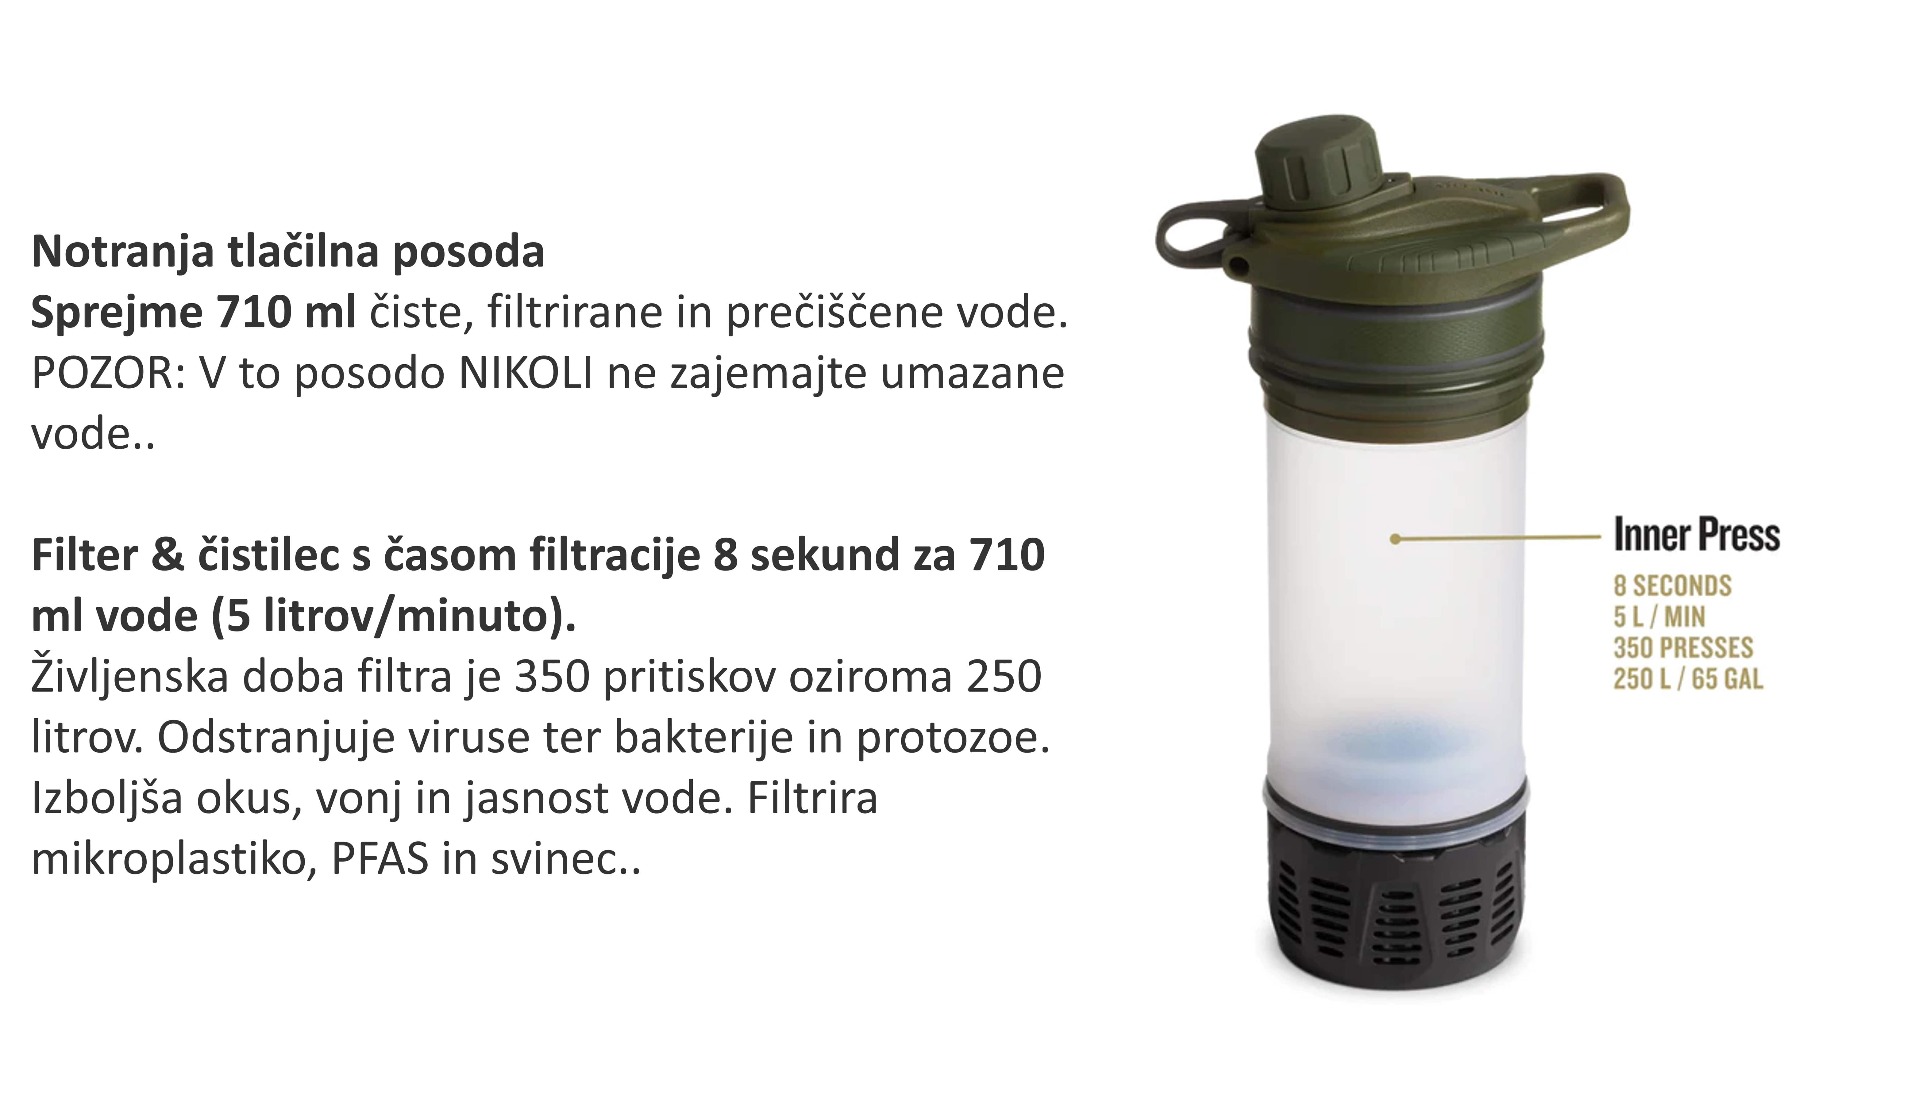 Vodni filter geopressr purifier covert edition olive drap je idealen za čistejšo vodo na poti. Kompakten, zanesljiv in ekološki filter za vodo za kampiranje in pohodništvo. Zagotavlja hitro filtracijo brez bakterij in mikrobov.